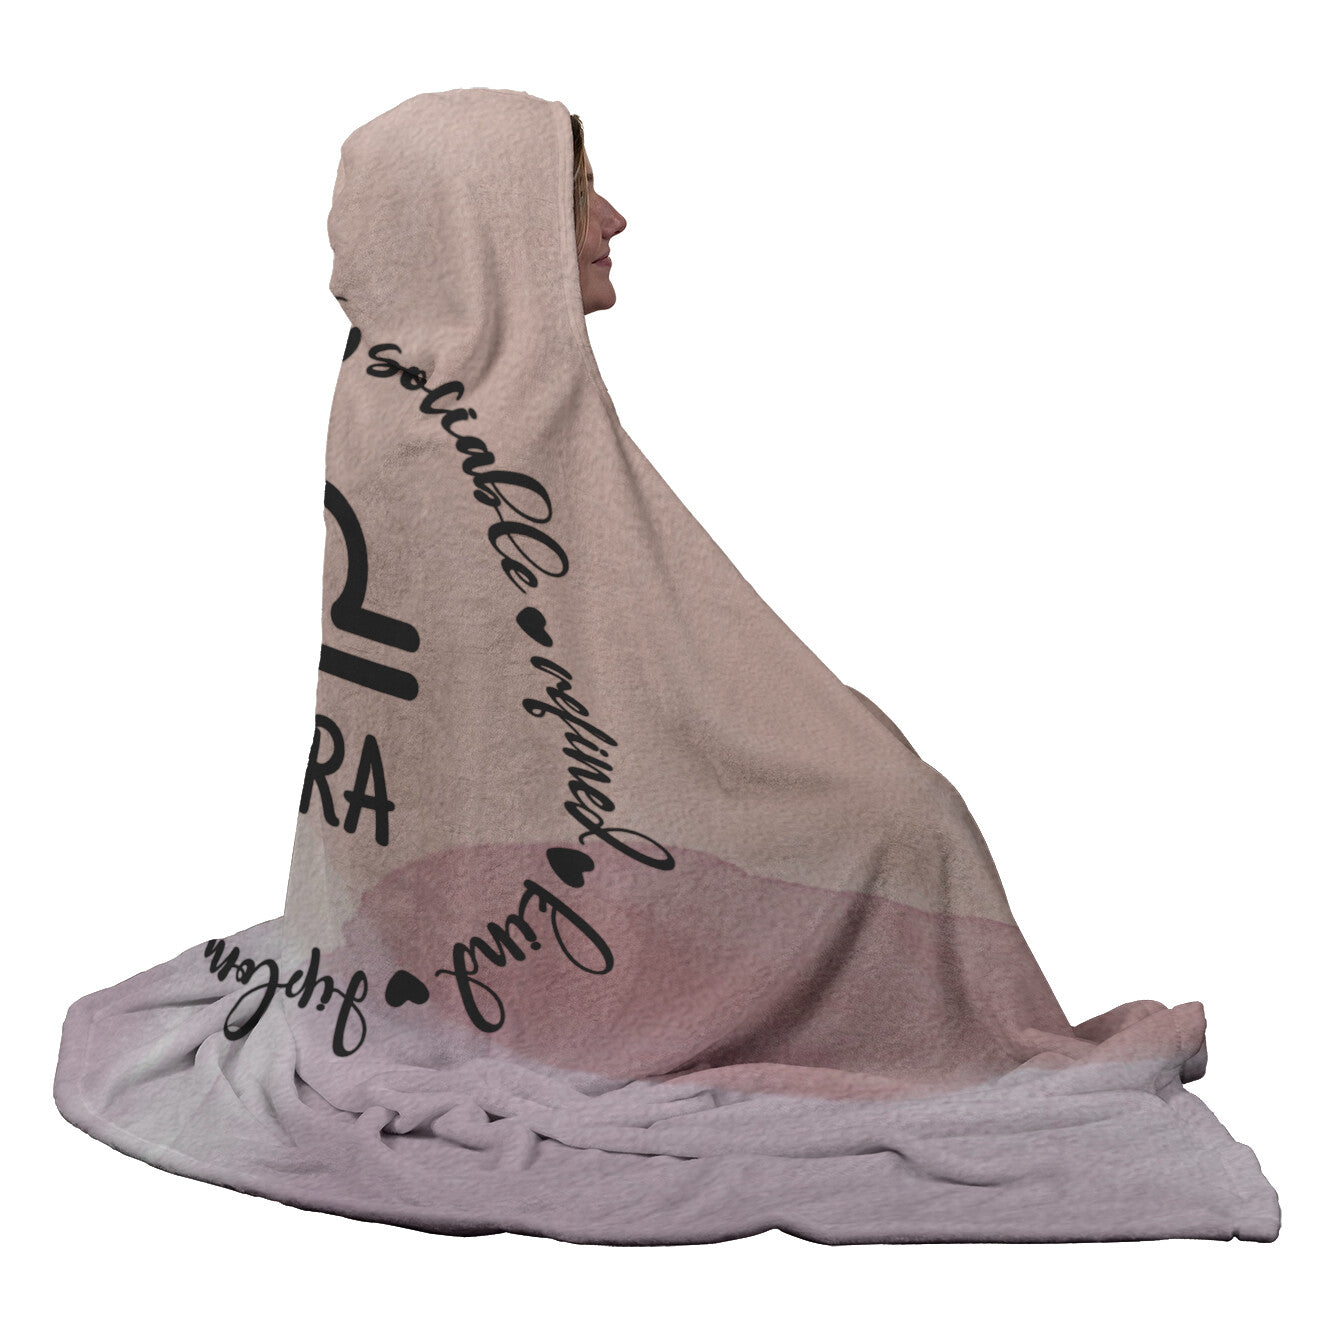 Libra Hooded Blanket